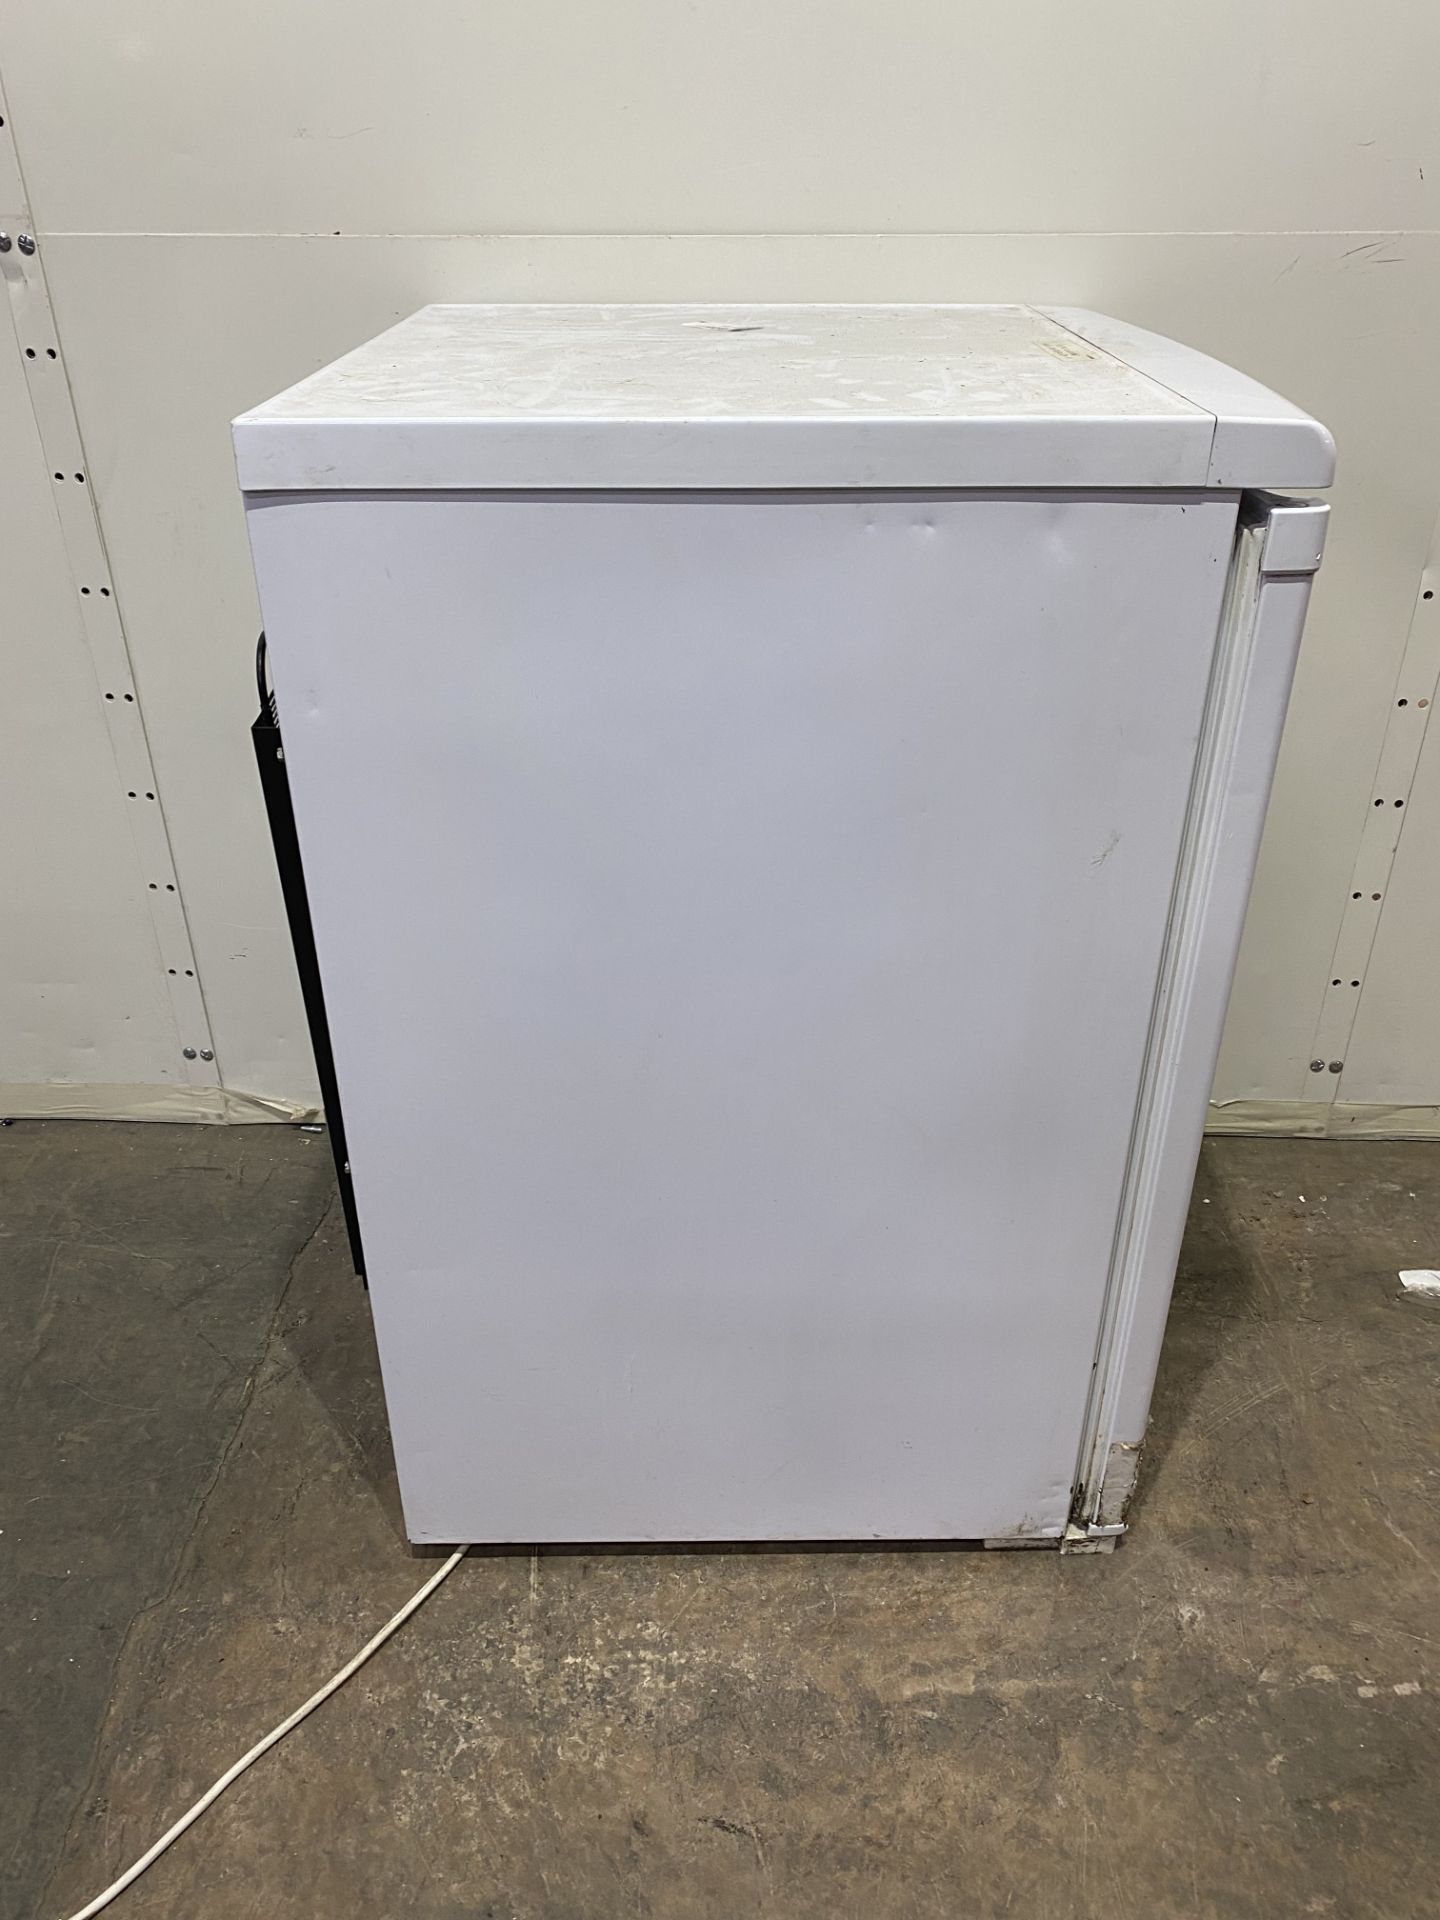 Hotpoint RLAV21 55cm Freestanding Under Counter Fridge, White - Image 6 of 7